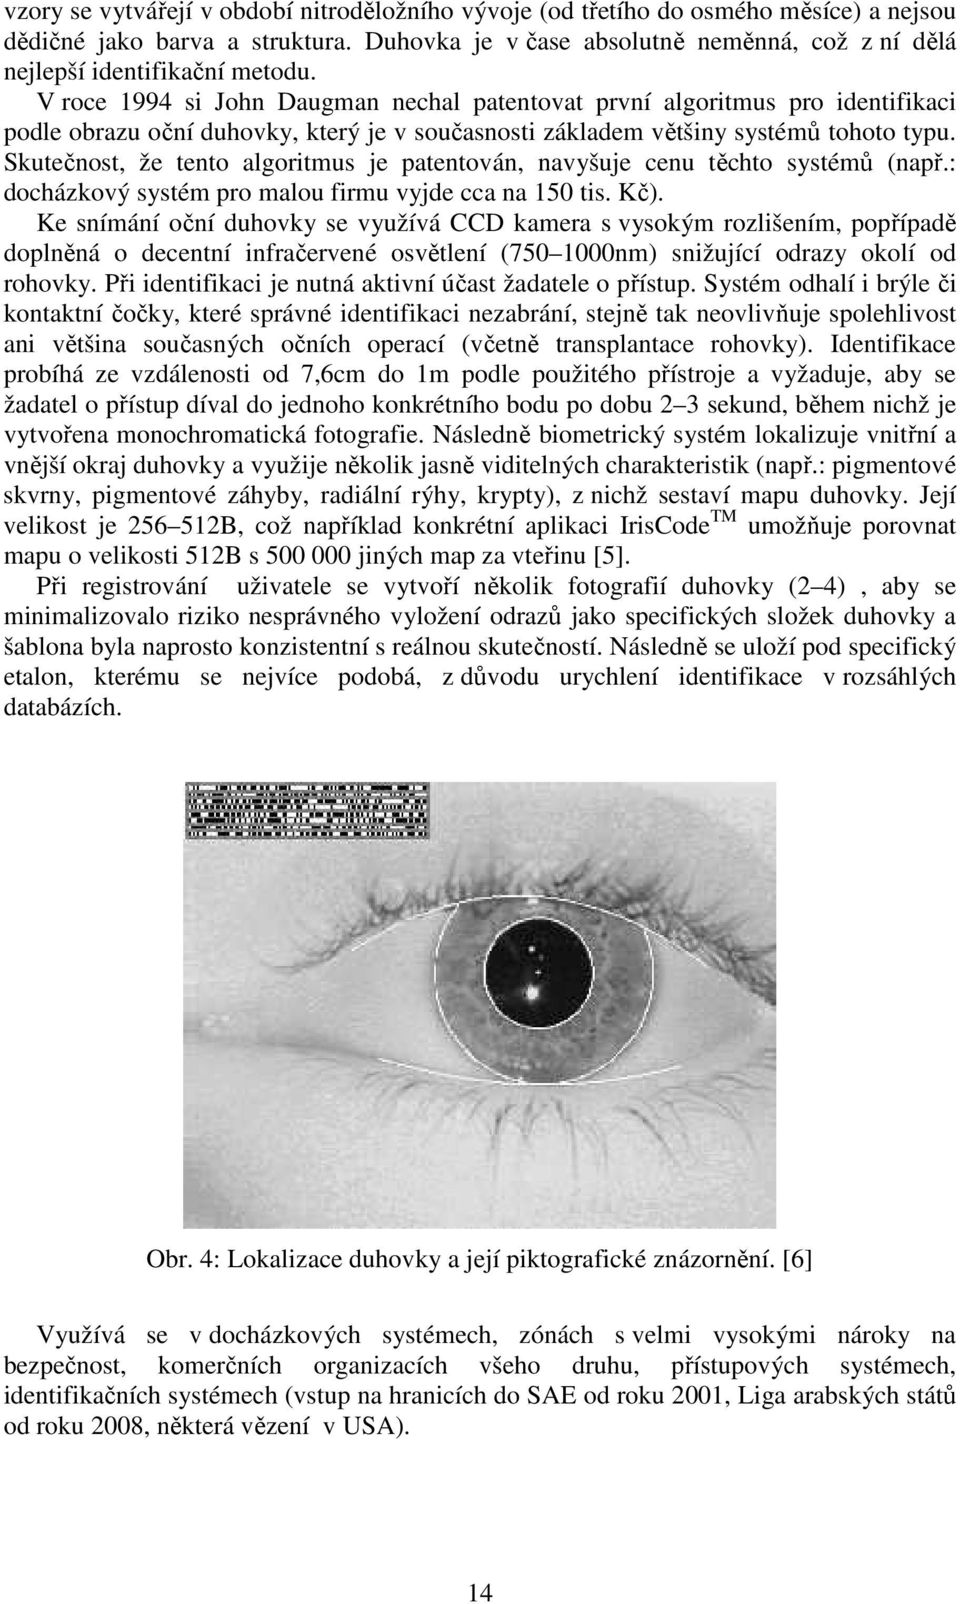 V roce 1994 si John Daugman nechal patentovat první algoritmus pro identifikaci podle obrazu oční duhovky, který je v současnosti základem většiny systémů tohoto typu.